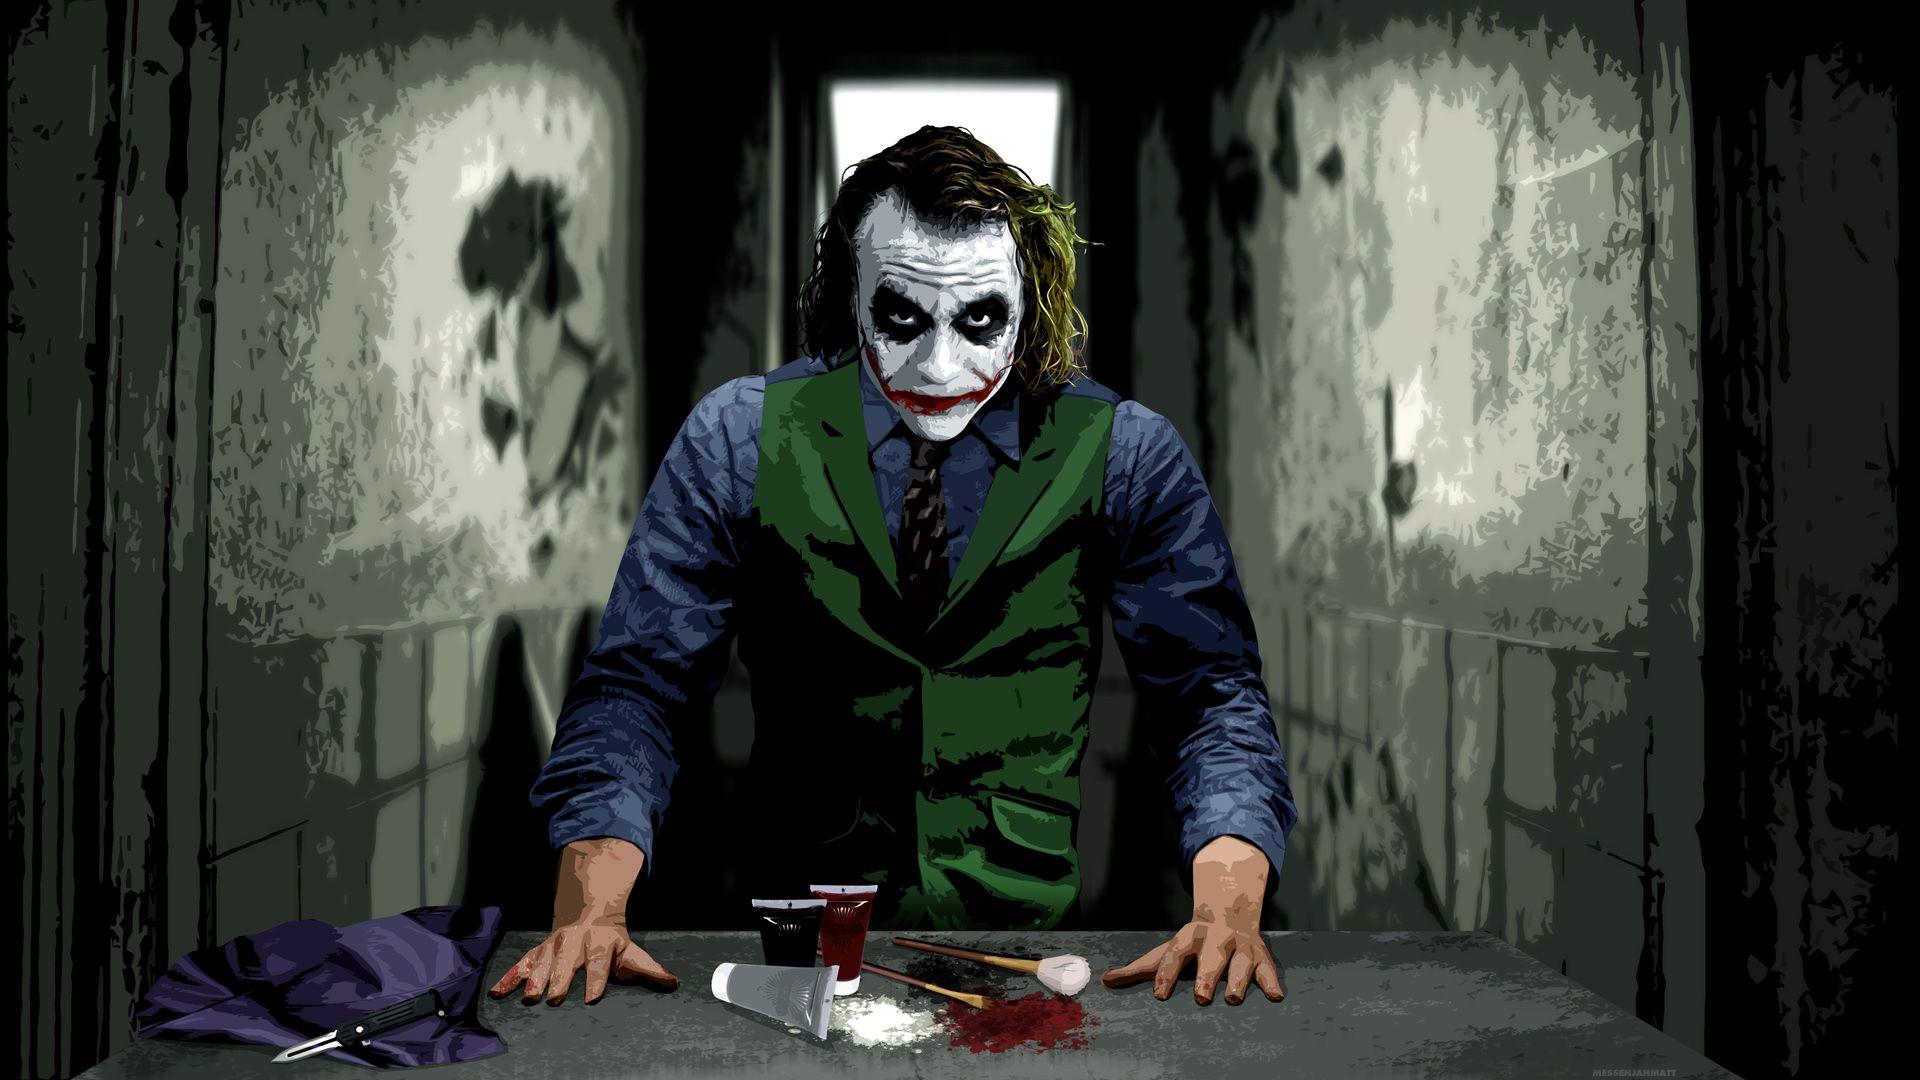 Scary Joker Wallpapers